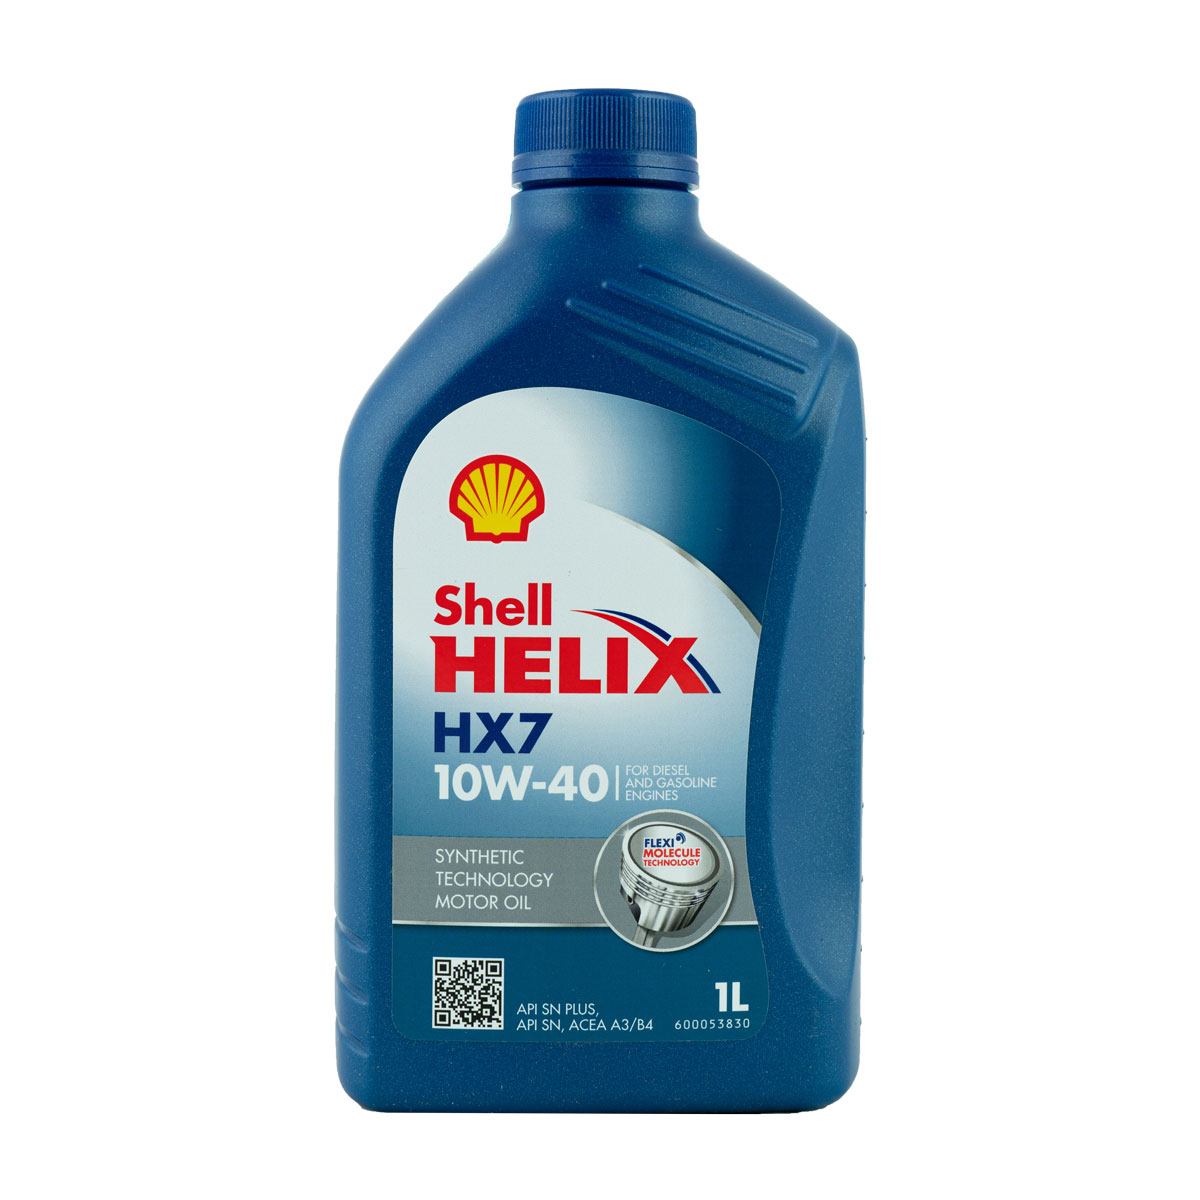 Shell Helix HX7 10W-40 Motoröl, 1l